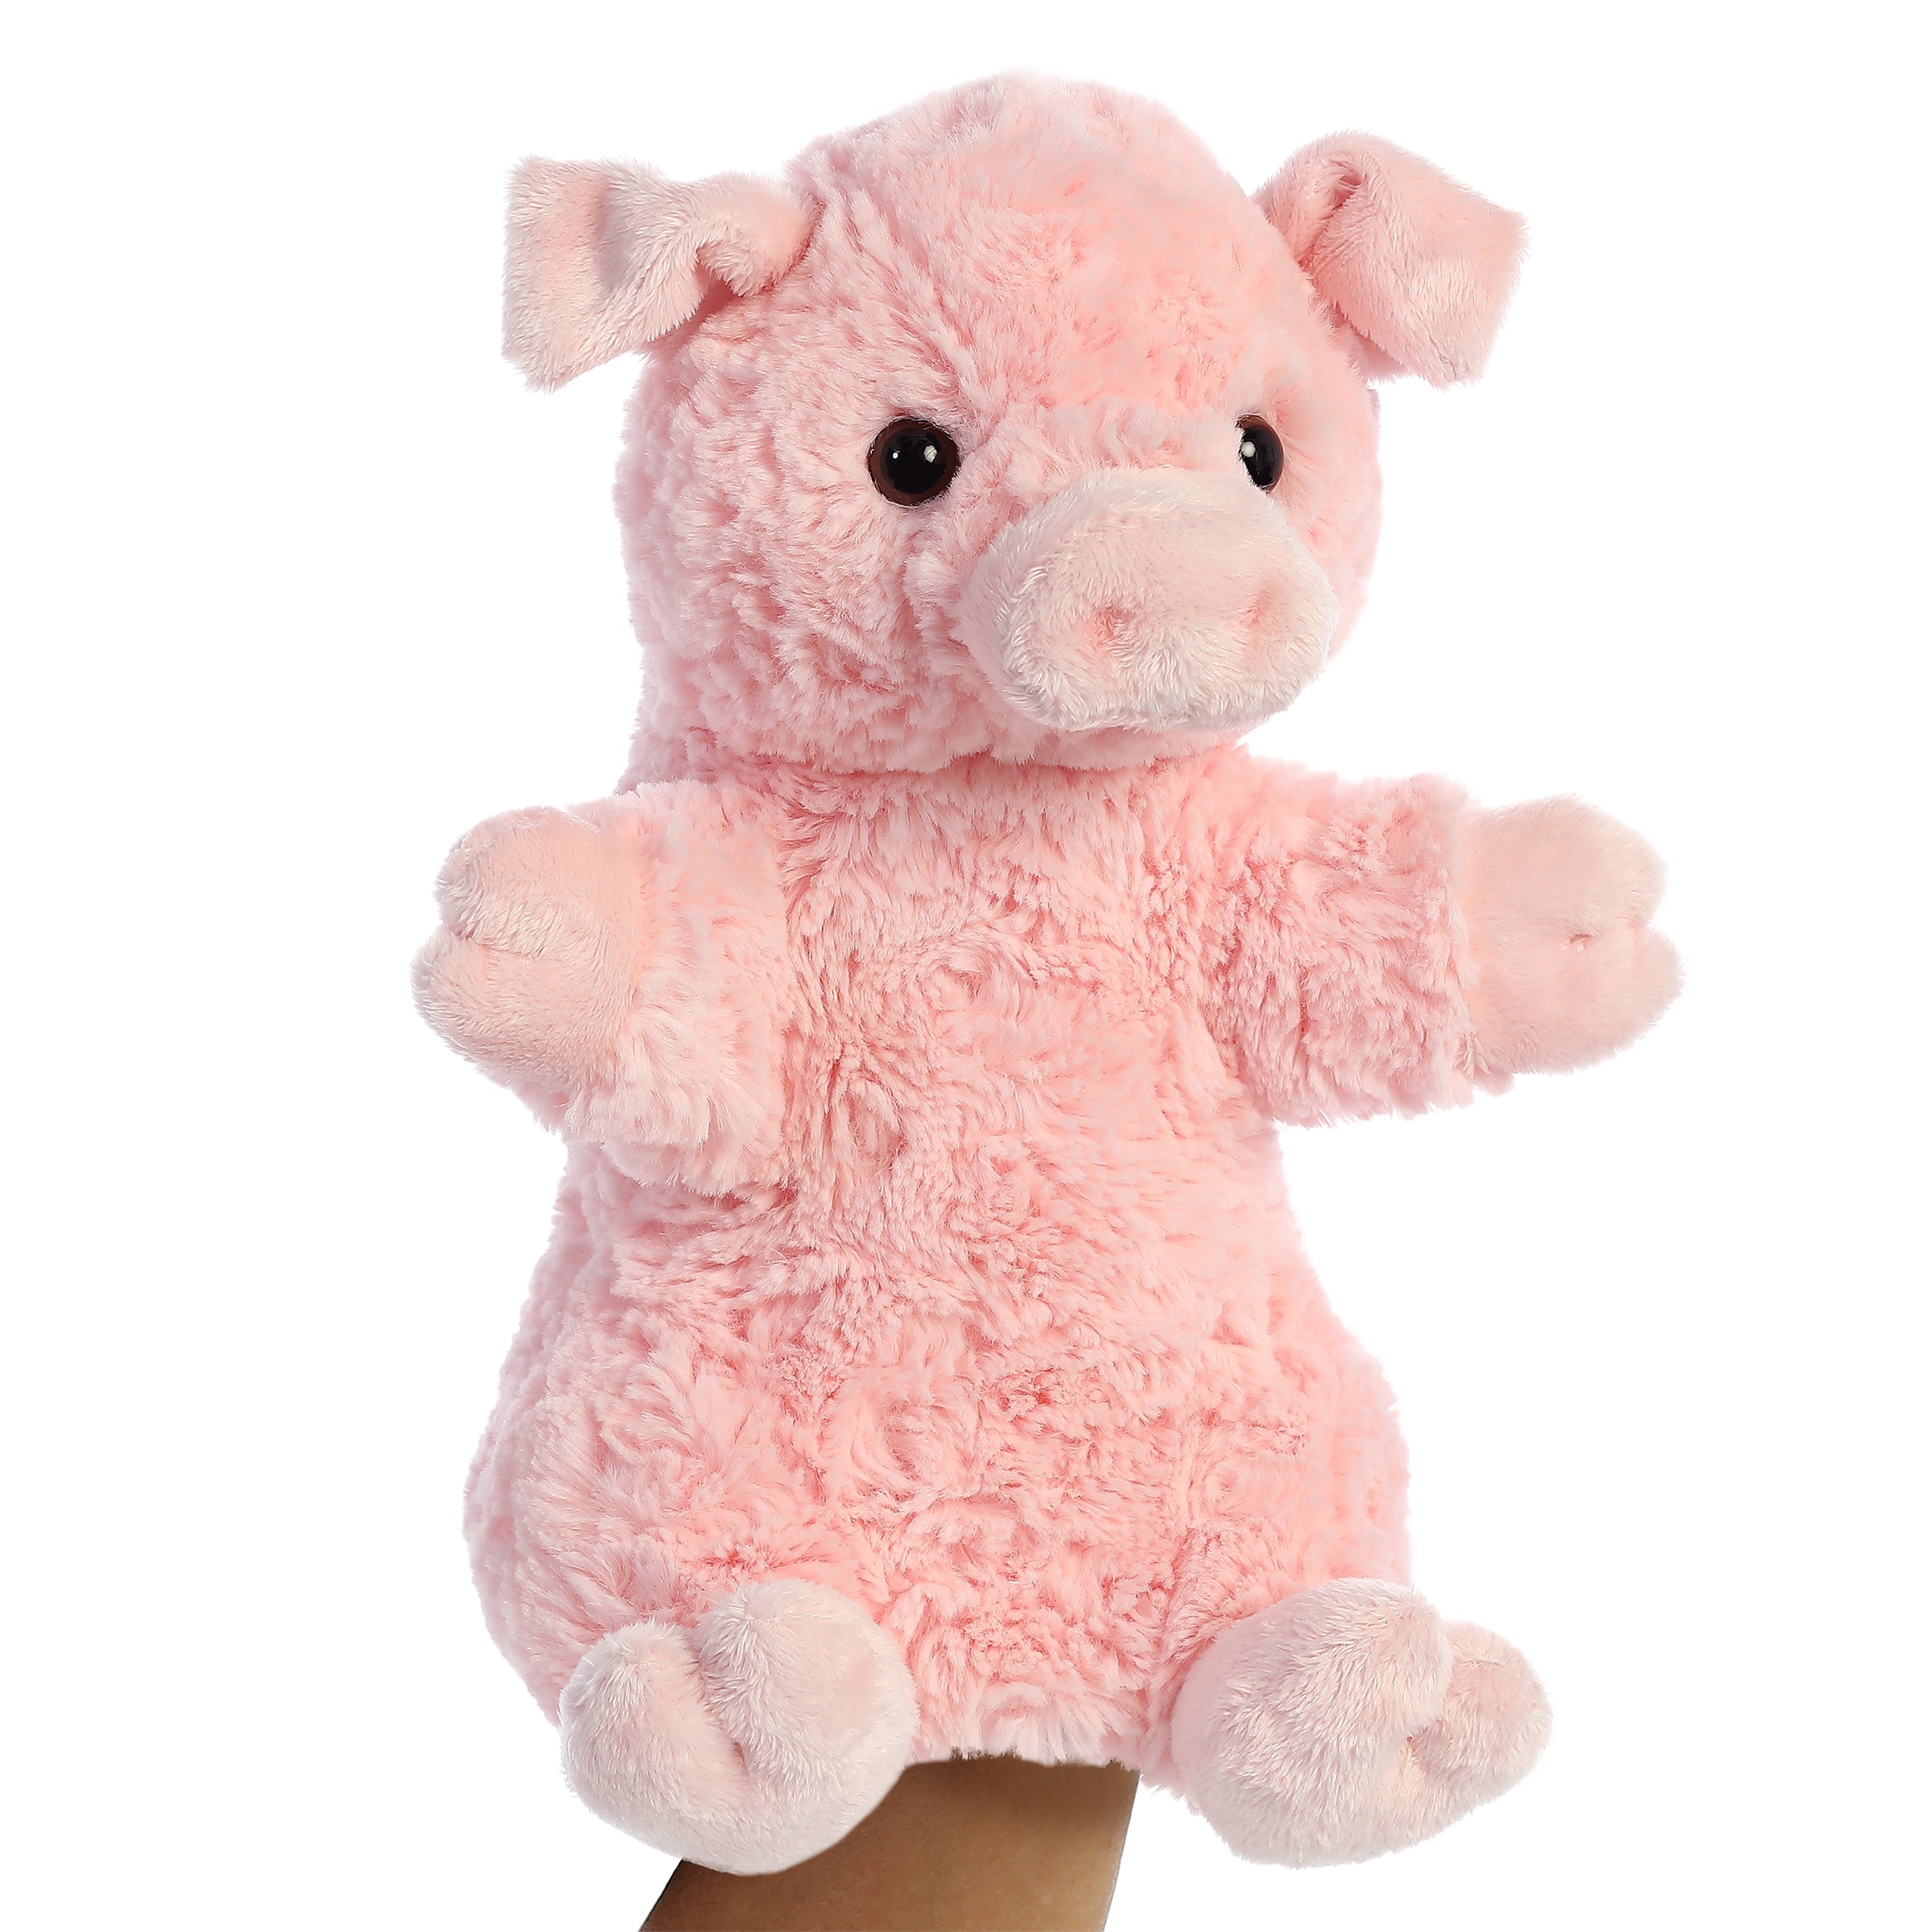 Aurora® - Marioneta de mano - 11" Pinky The Pig™